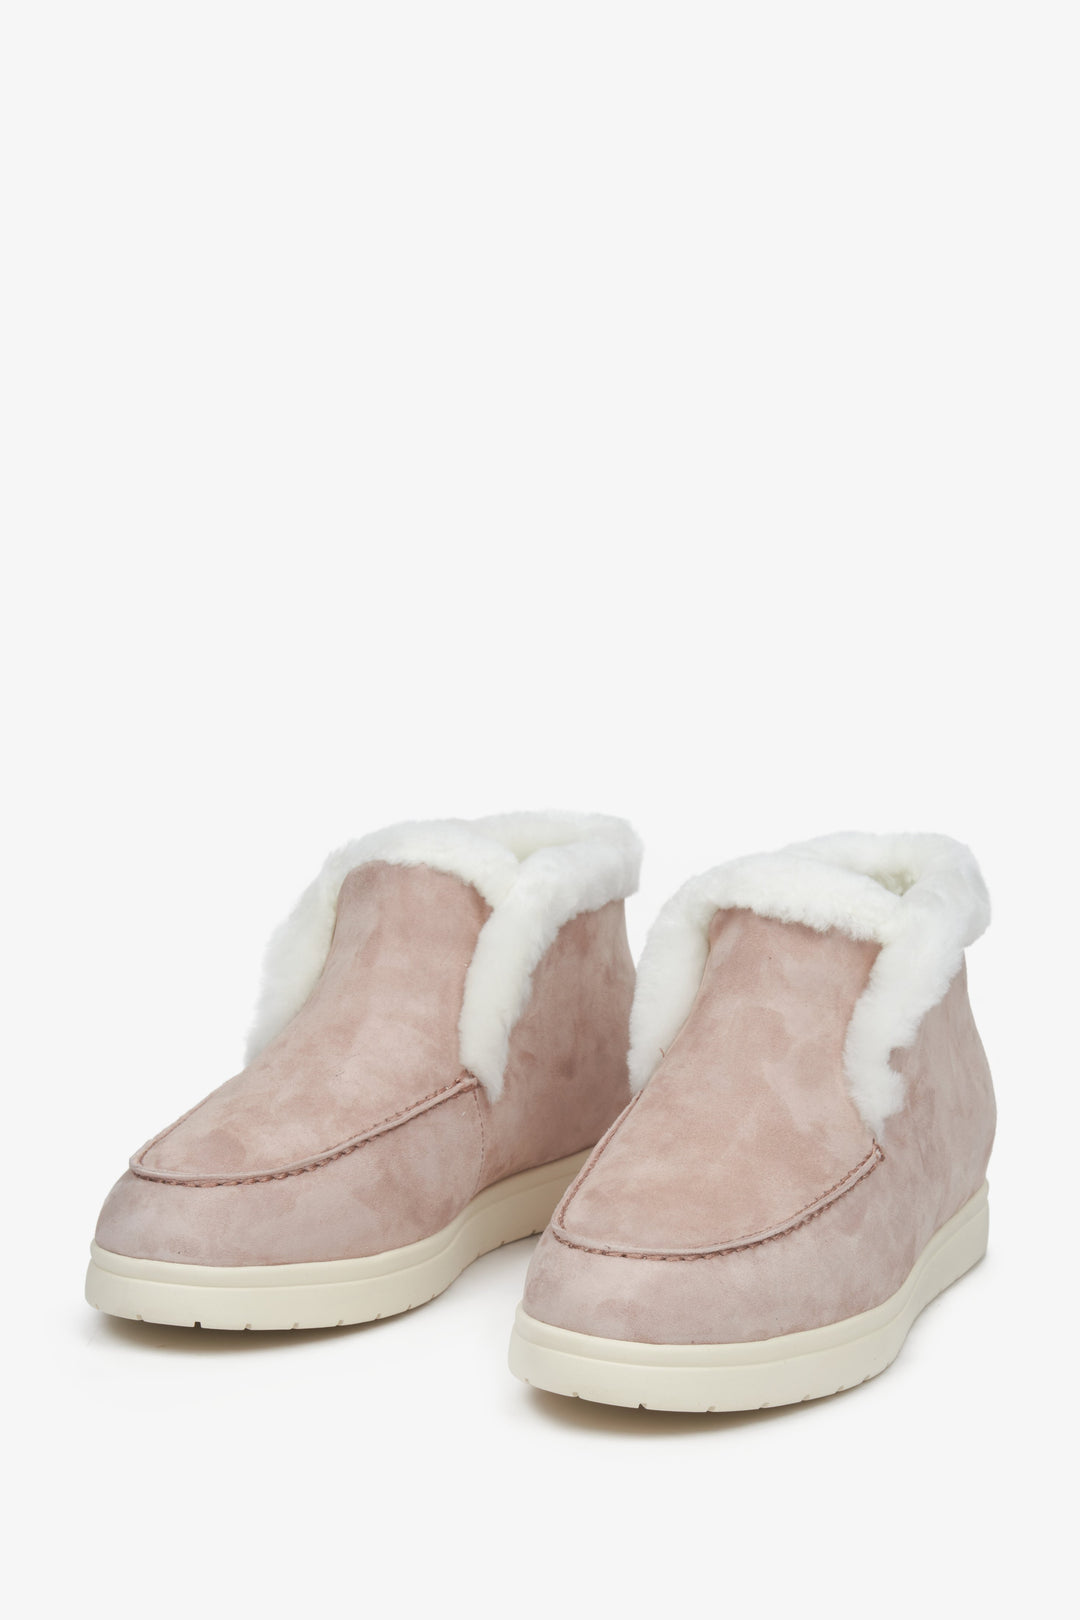 Damskie mokasyny zimowe w kolorze różowym z weluru i skóry naturalnej Estro - przednia część buta.